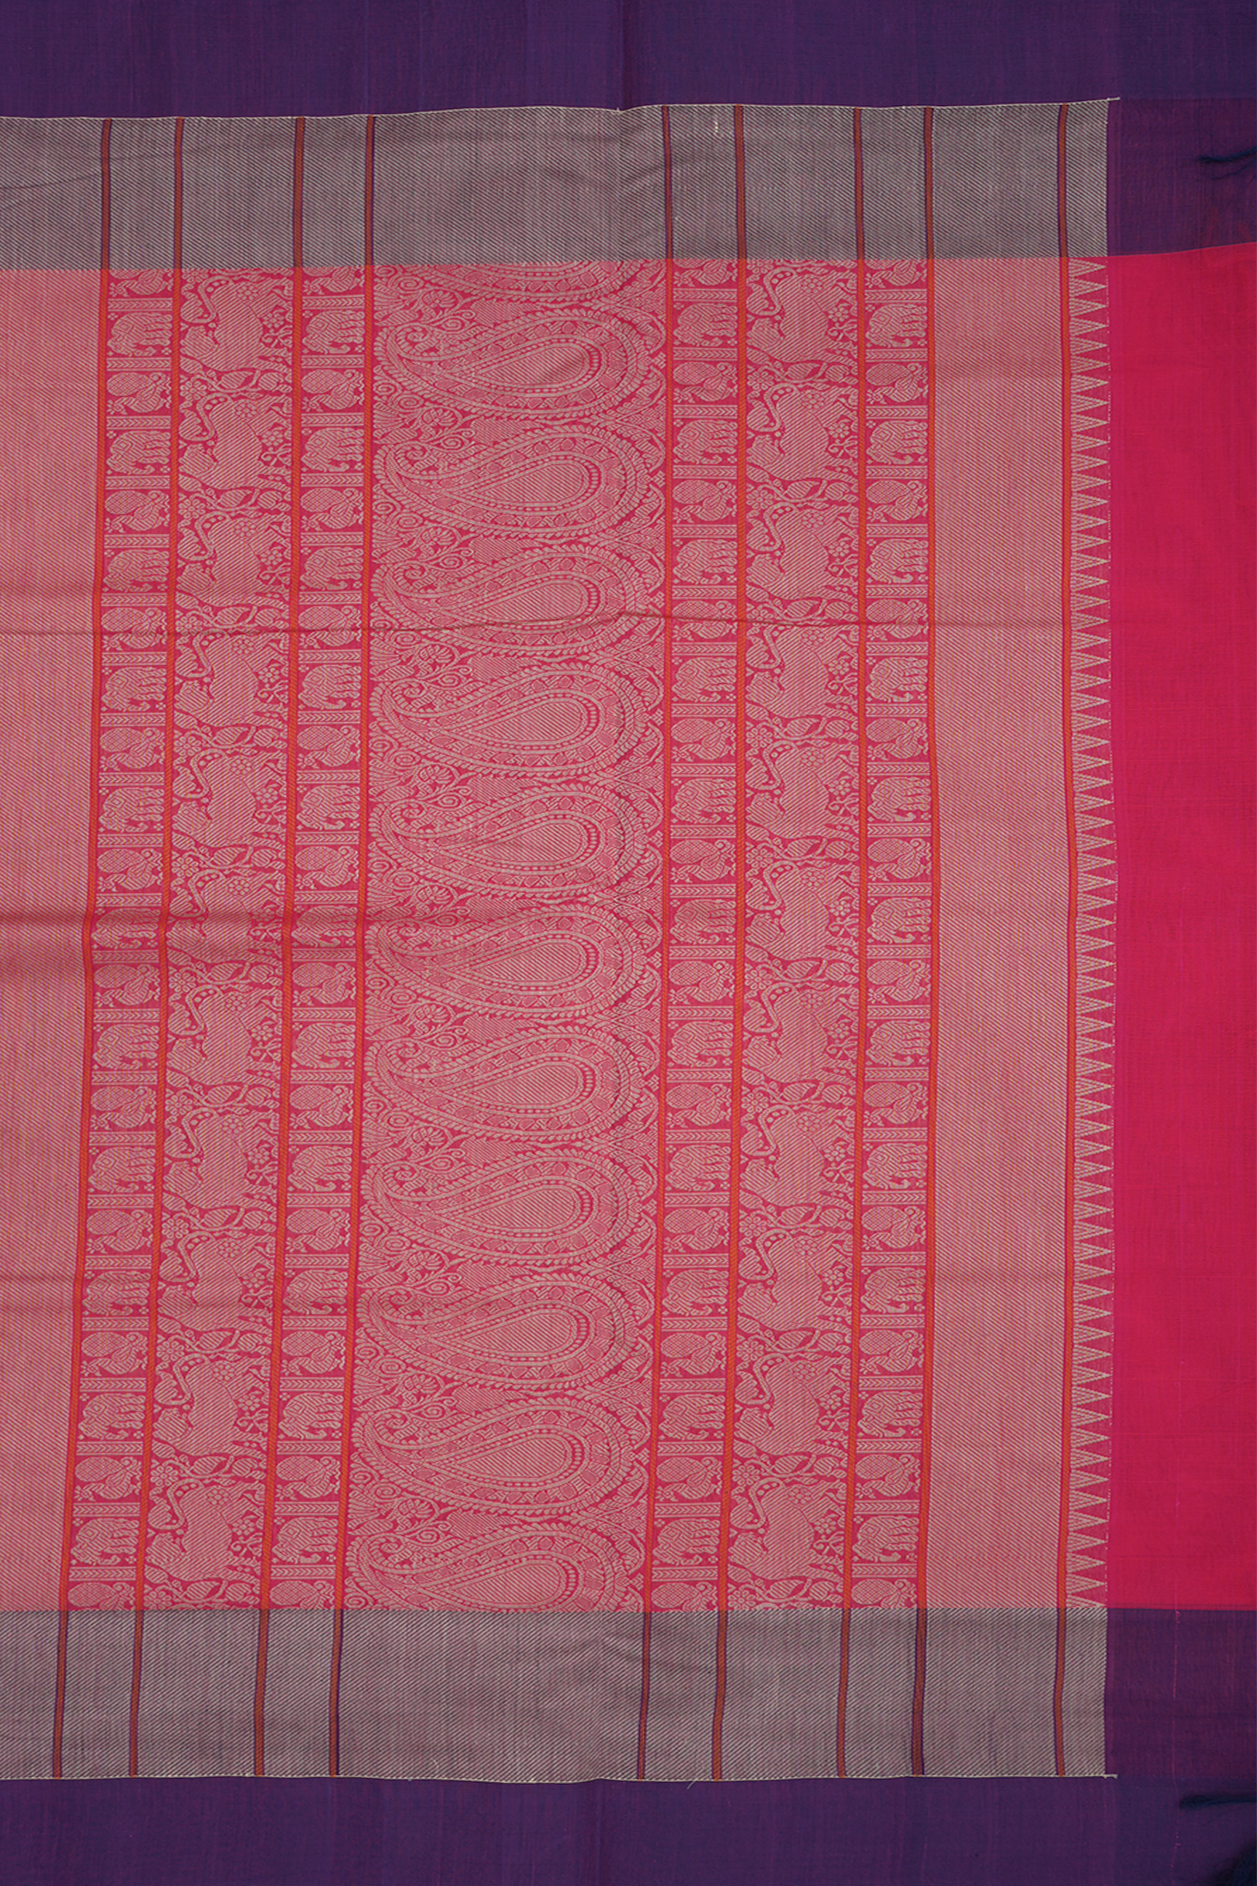 Vanasingaram Design Hot Pink Coimbatore Cotton Saree